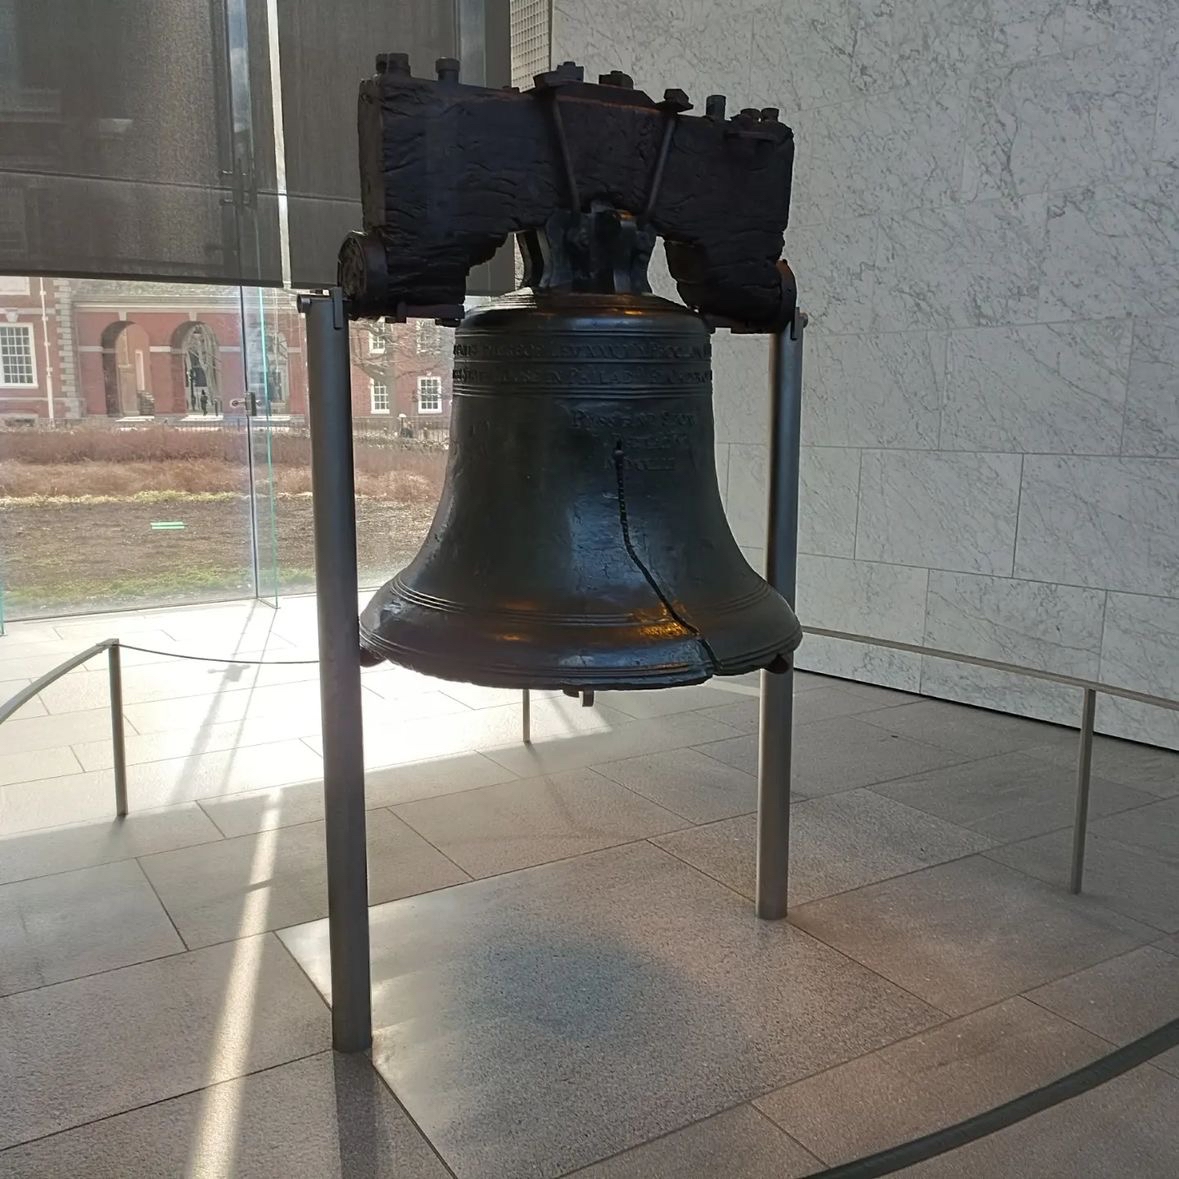 自由钟（Liberty Bell）是美国的一个历史象征，位于宾夕法尼亚州费城的独立国家历史公园内。这